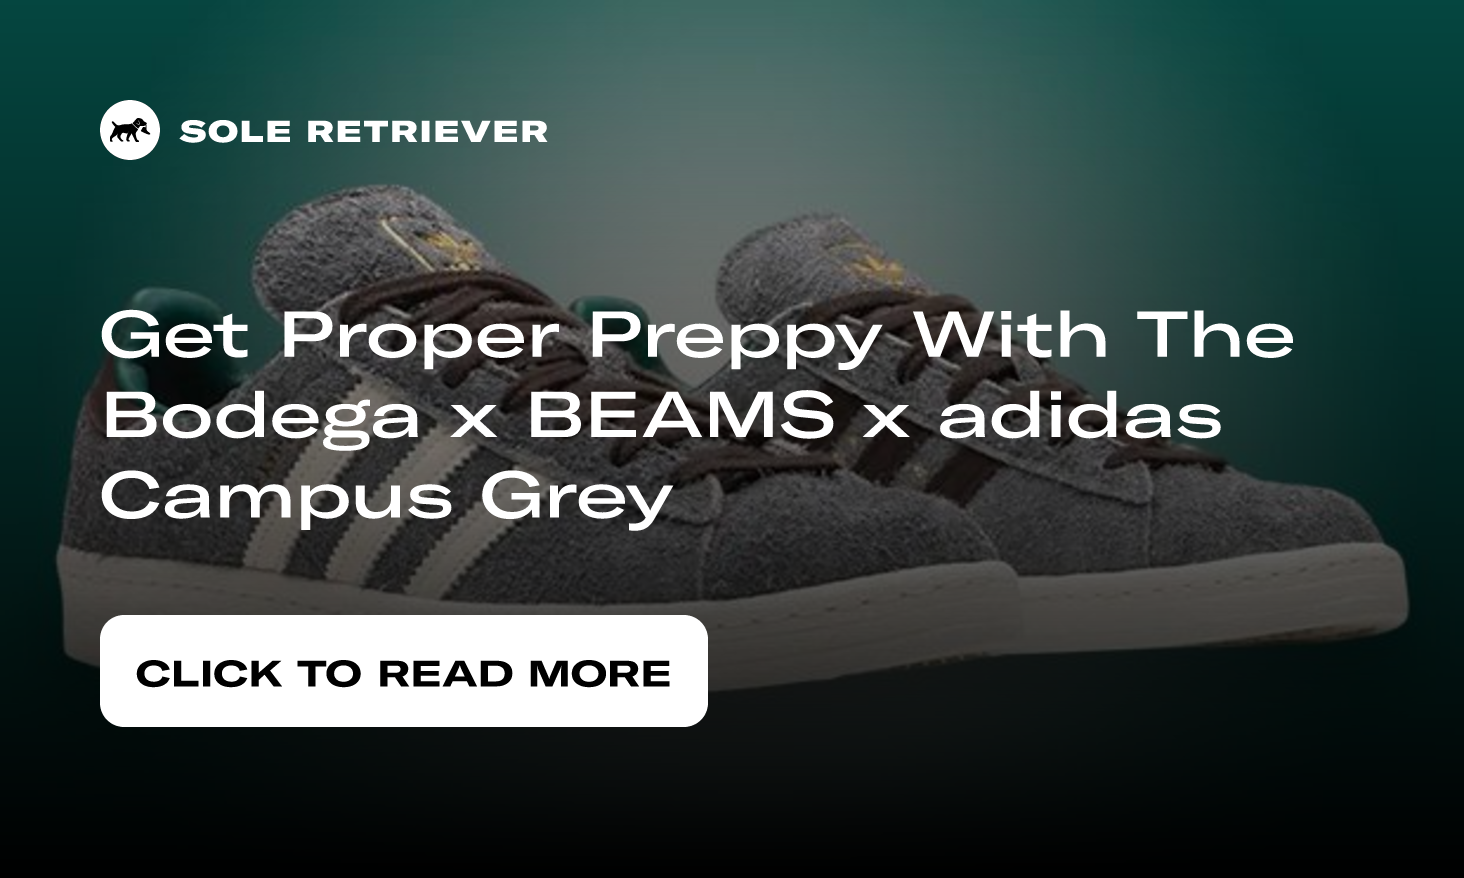 Get Proper Preppy With The Bodega x BEAMS x adidas Campus Grey